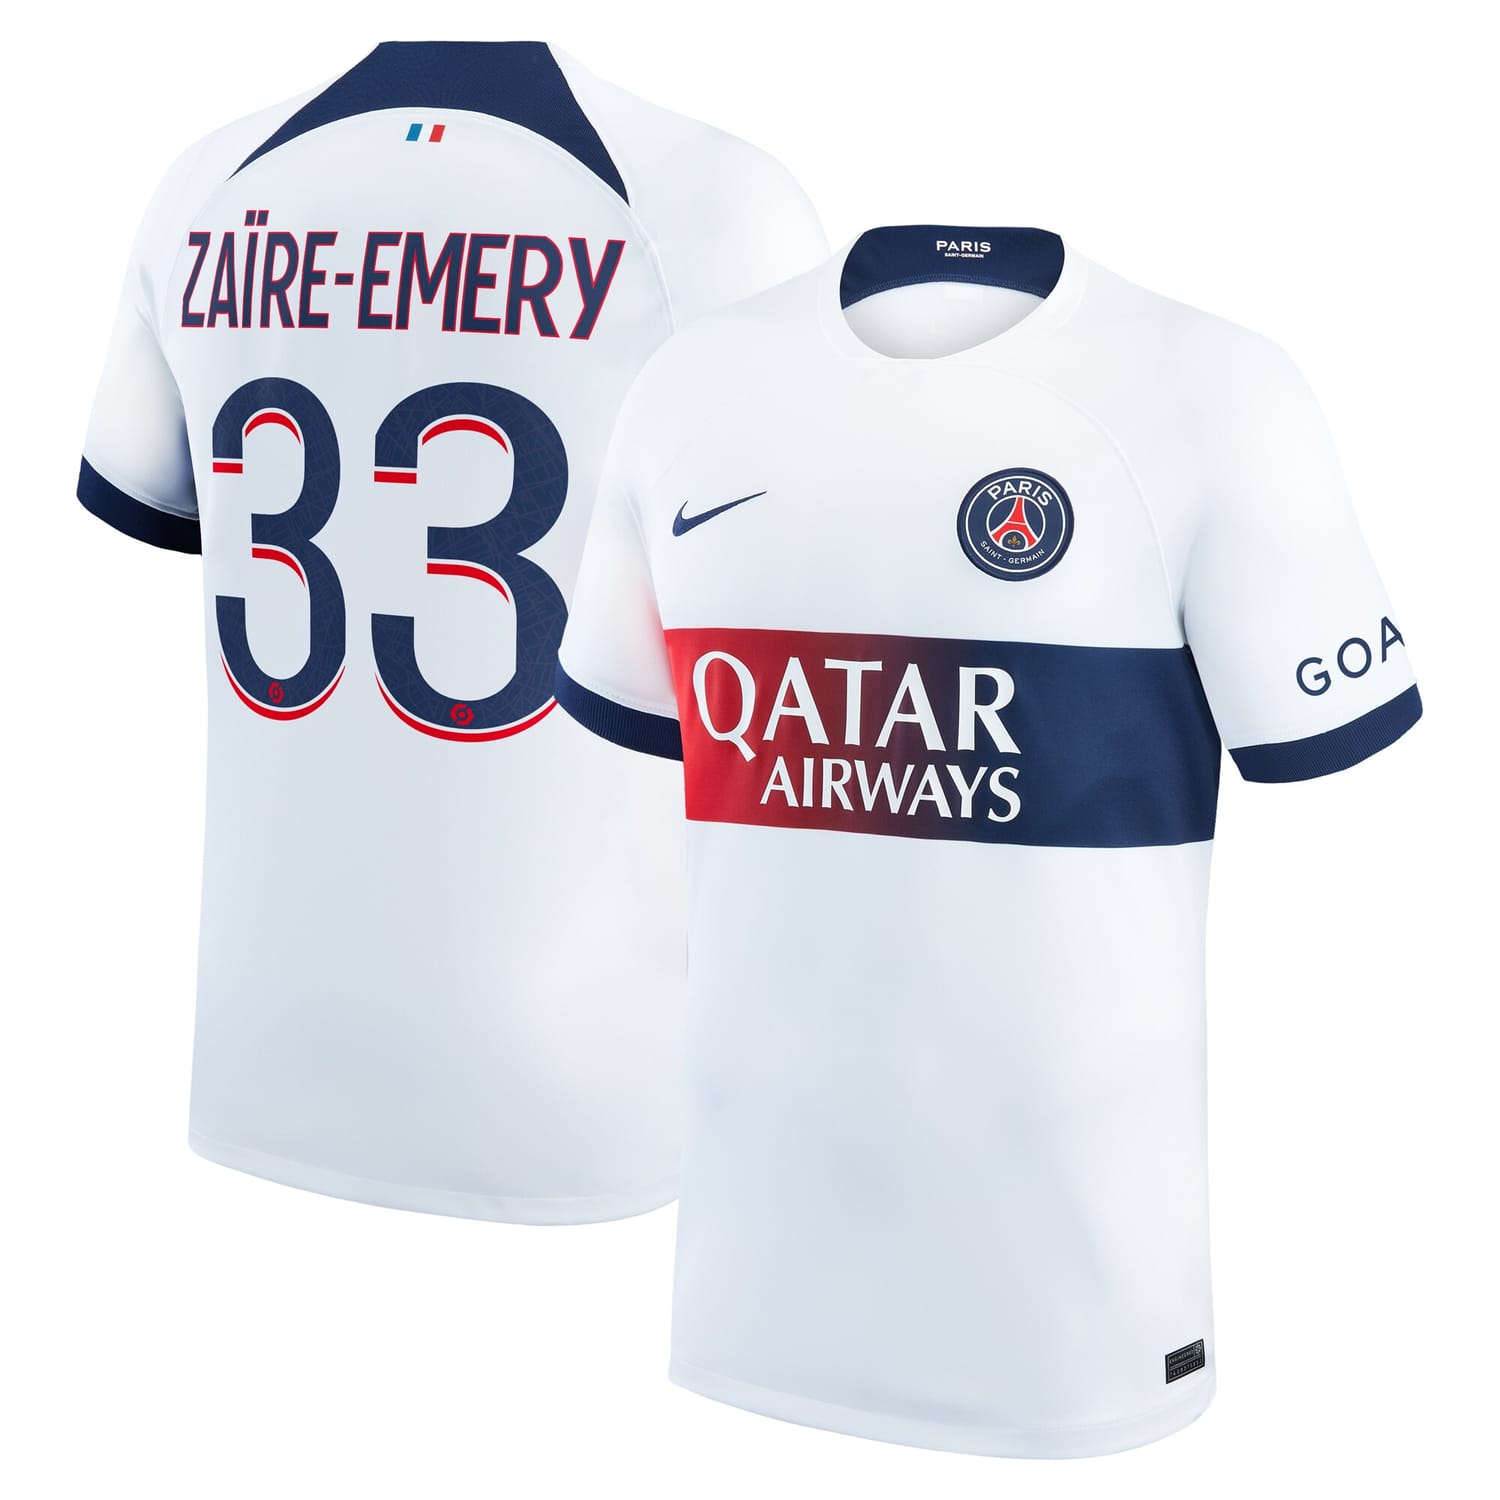 Ligue 1 Paris Saint-Germain Away Jersey Shirt 2023-24 player Warren Zaïre-Emery 33 printing for Men